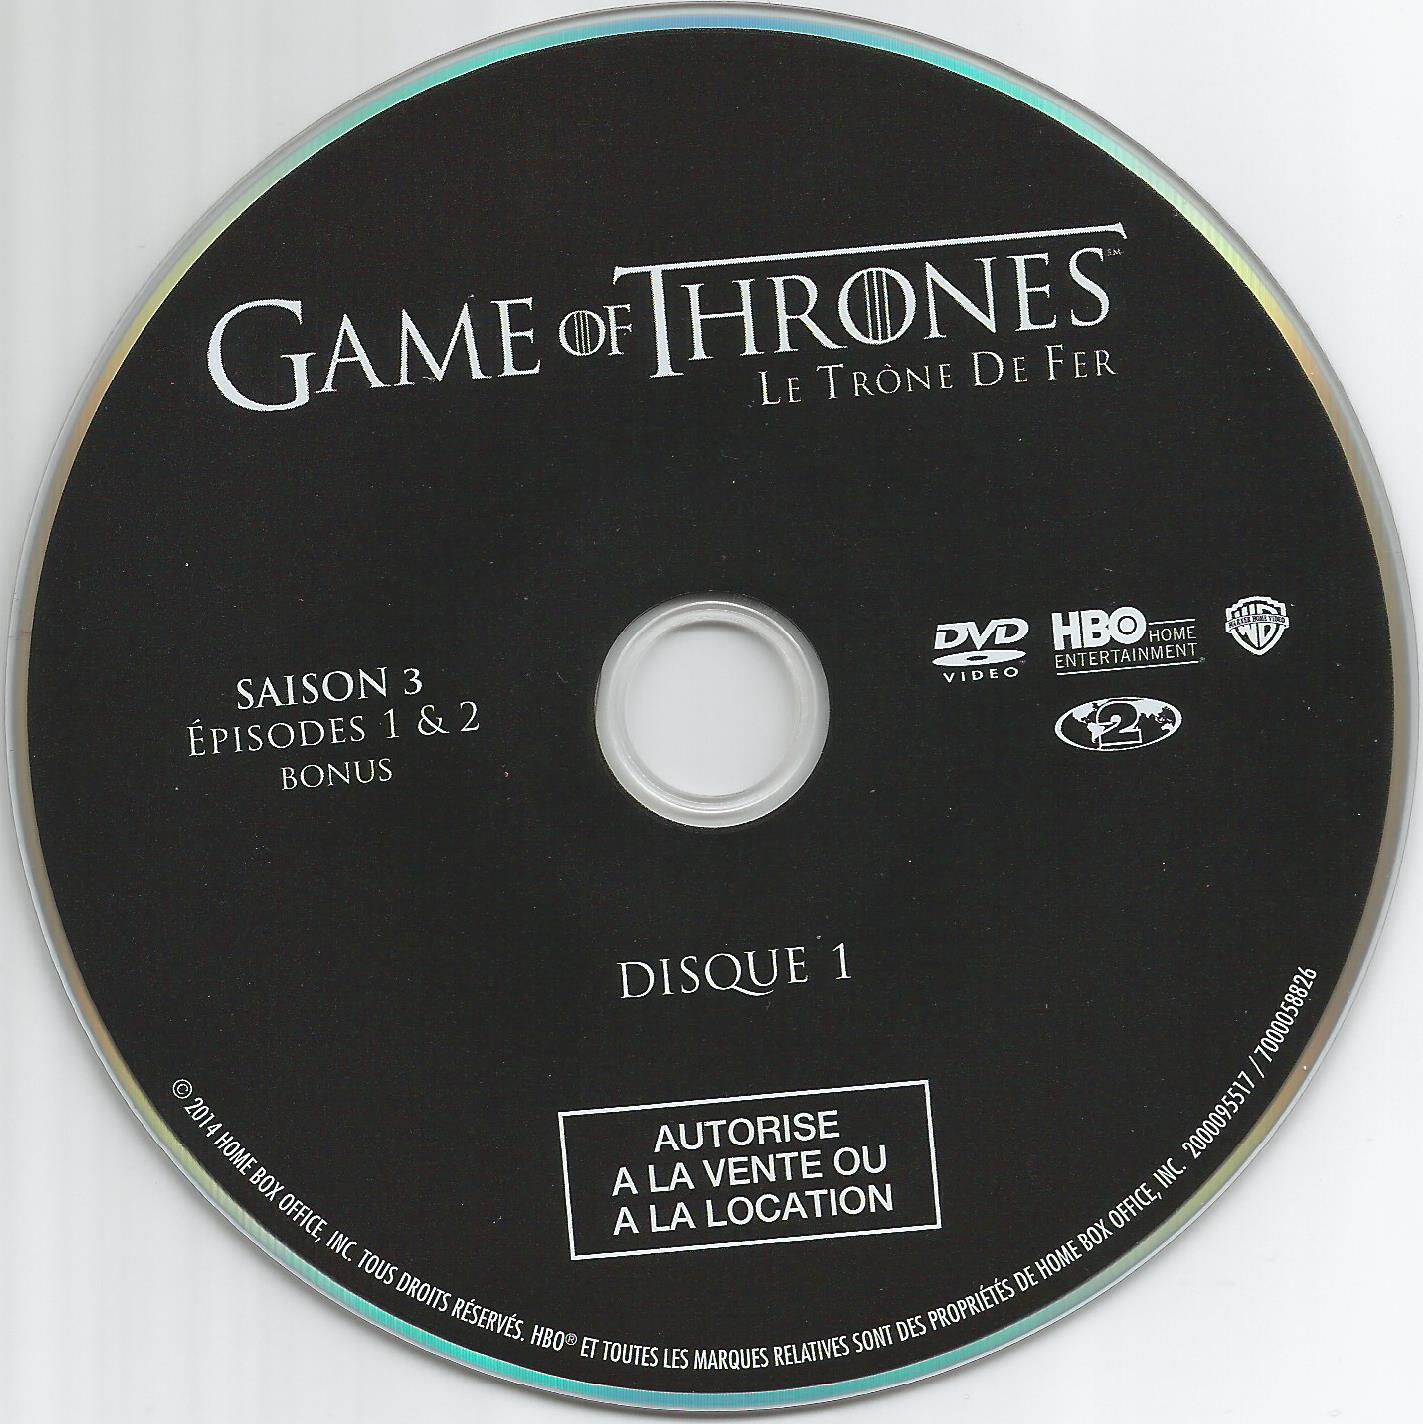 Game of thrones (le trone de fer) Saison 3 DVD 1